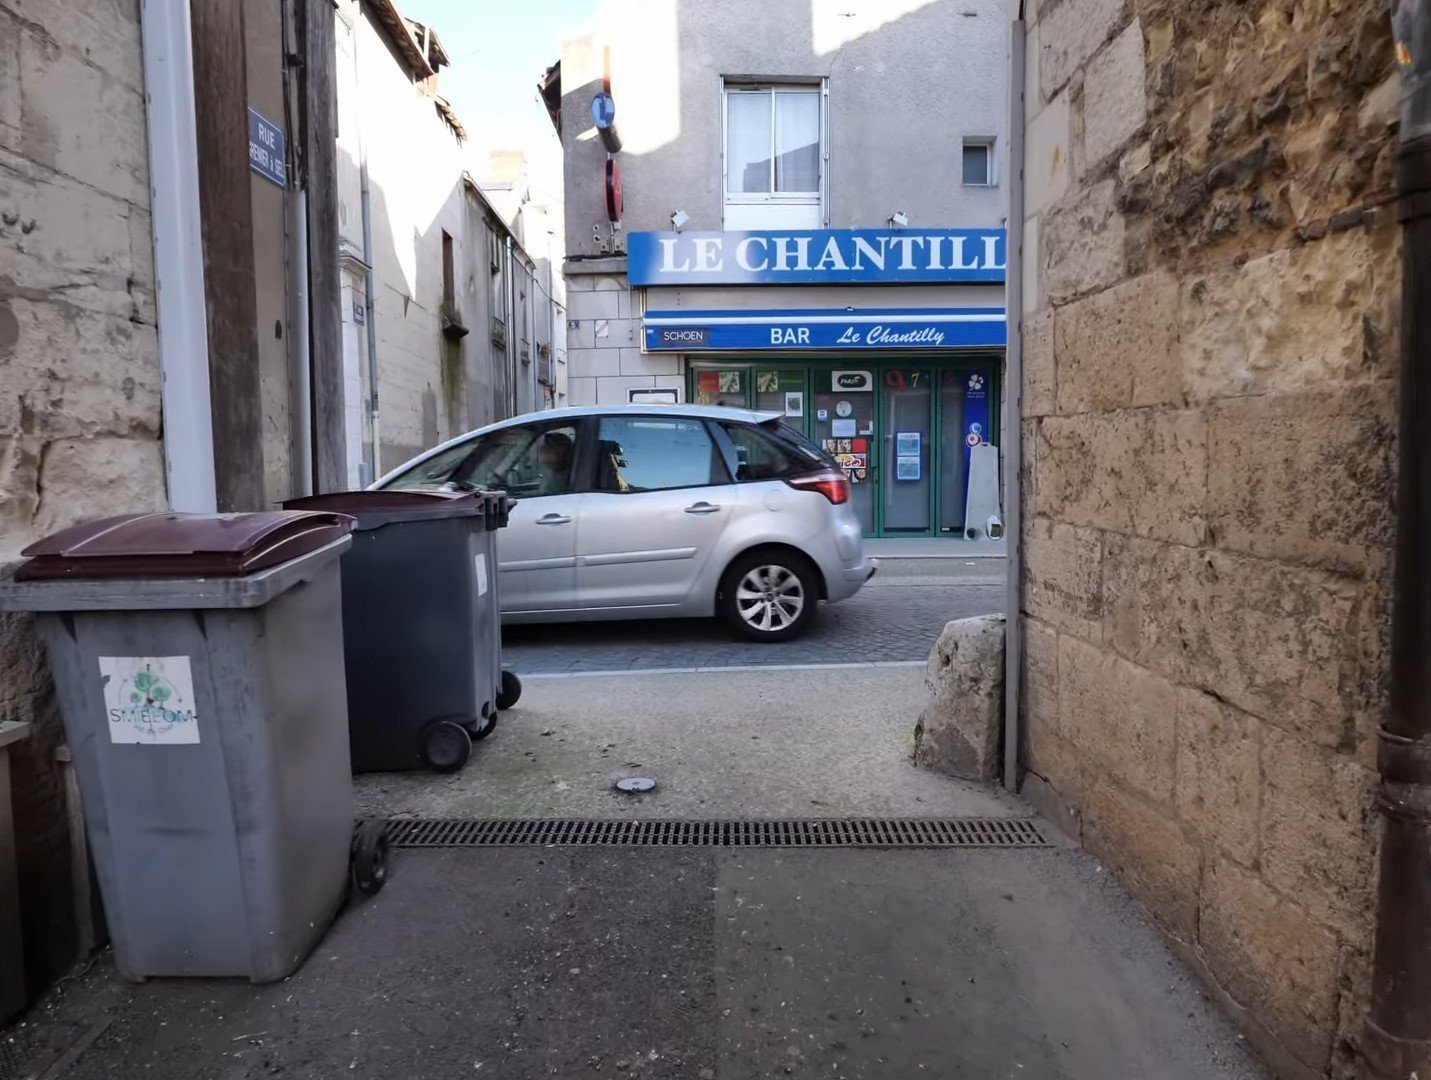 На Unreal Engine 5 воссоздали улицу во Франции выглядит пугающе реалистично